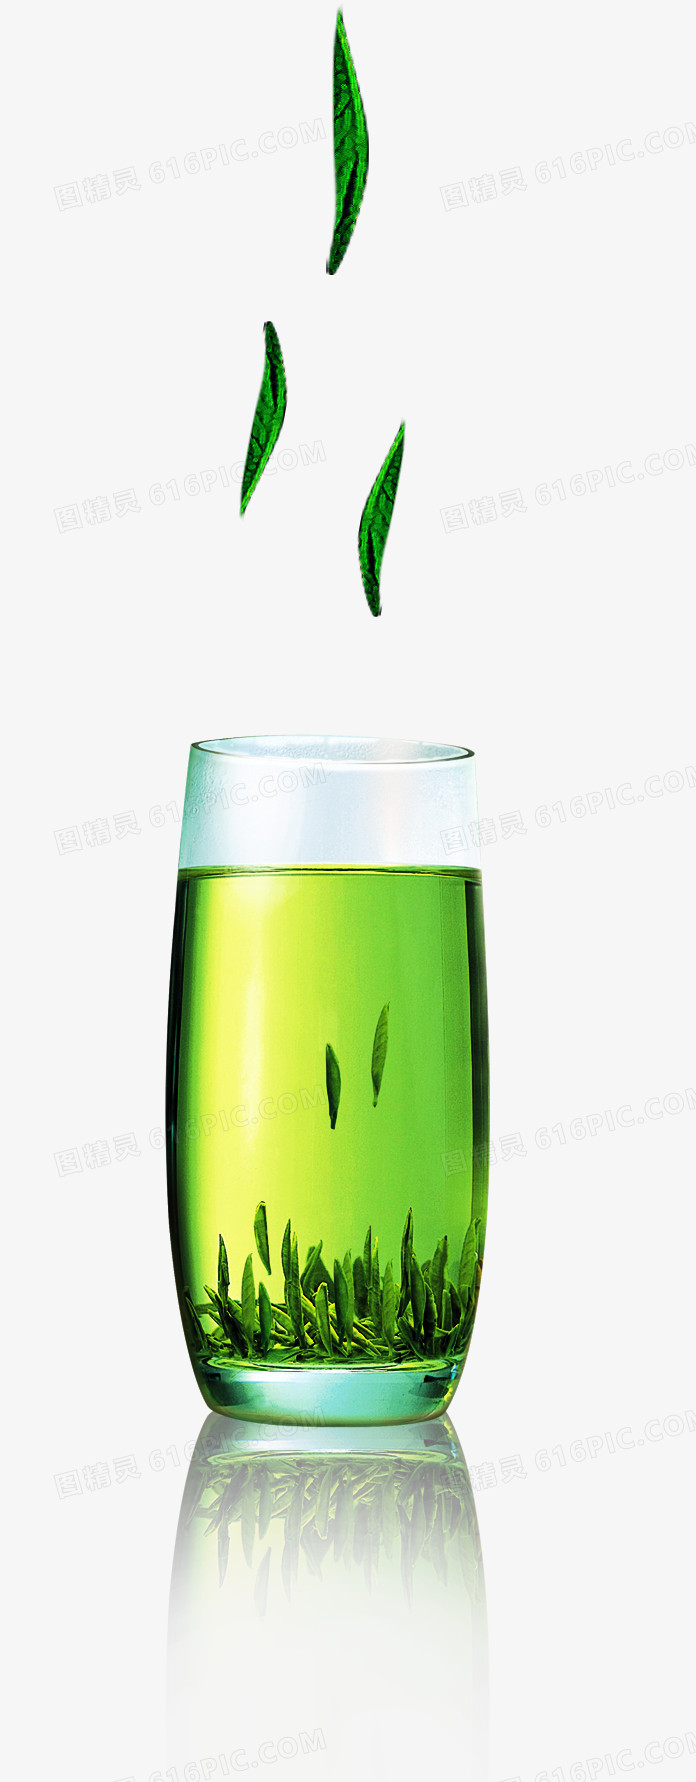 绿色茶叶装饰图案